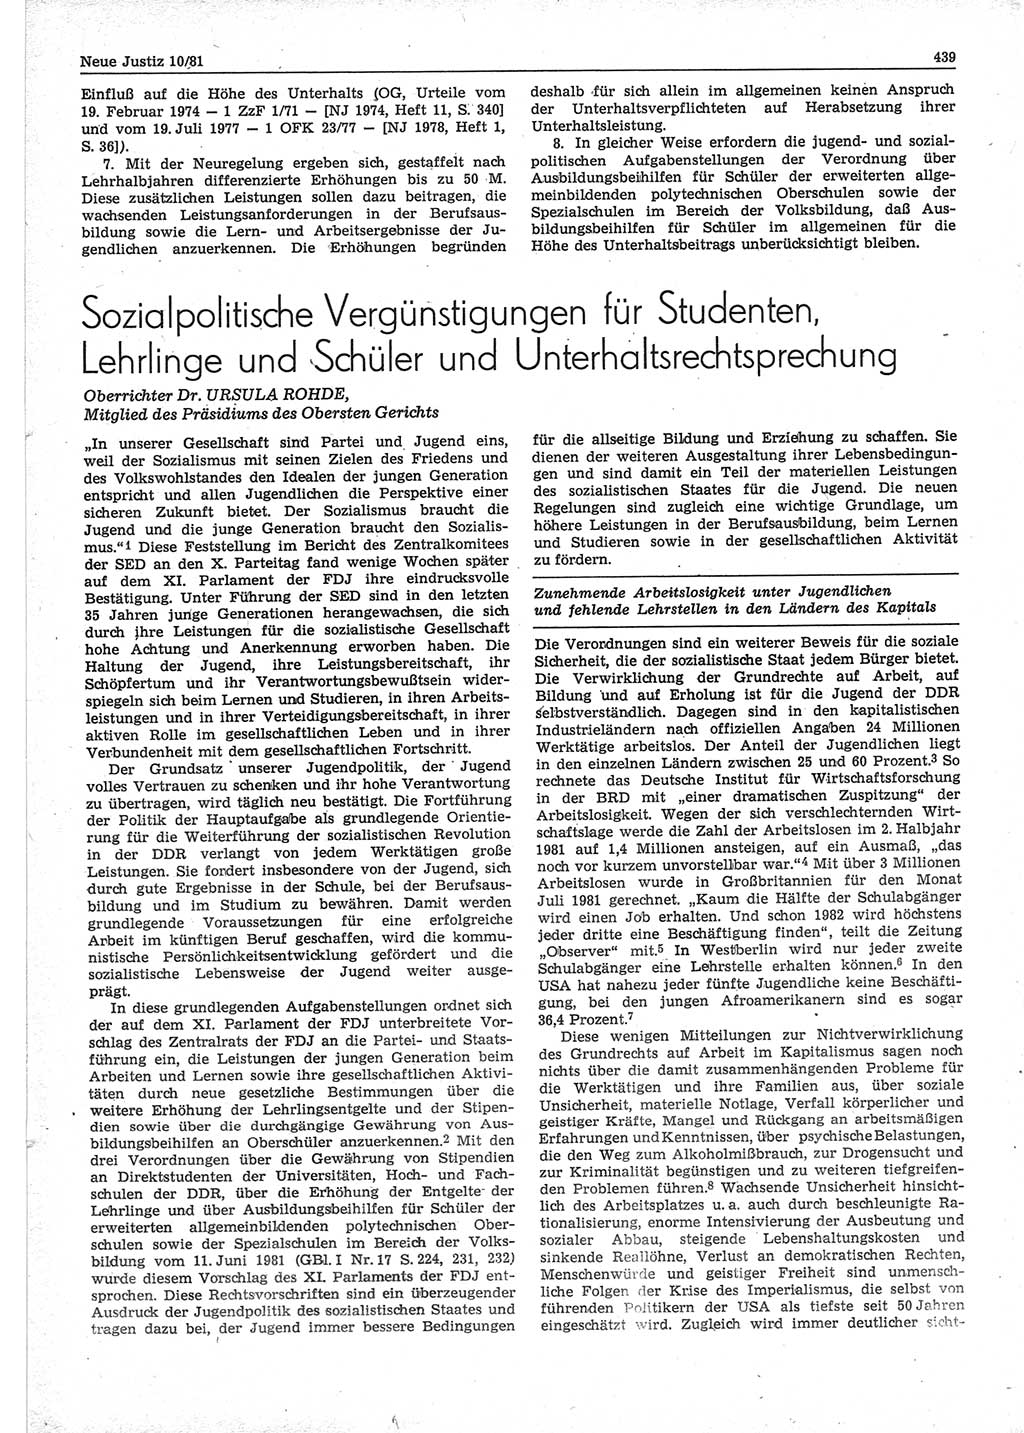 Neue Justiz (NJ), Zeitschrift für sozialistisches Recht und Gesetzlichkeit [Deutsche Demokratische Republik (DDR)], 35. Jahrgang 1981, Seite 439 (NJ DDR 1981, S. 439)